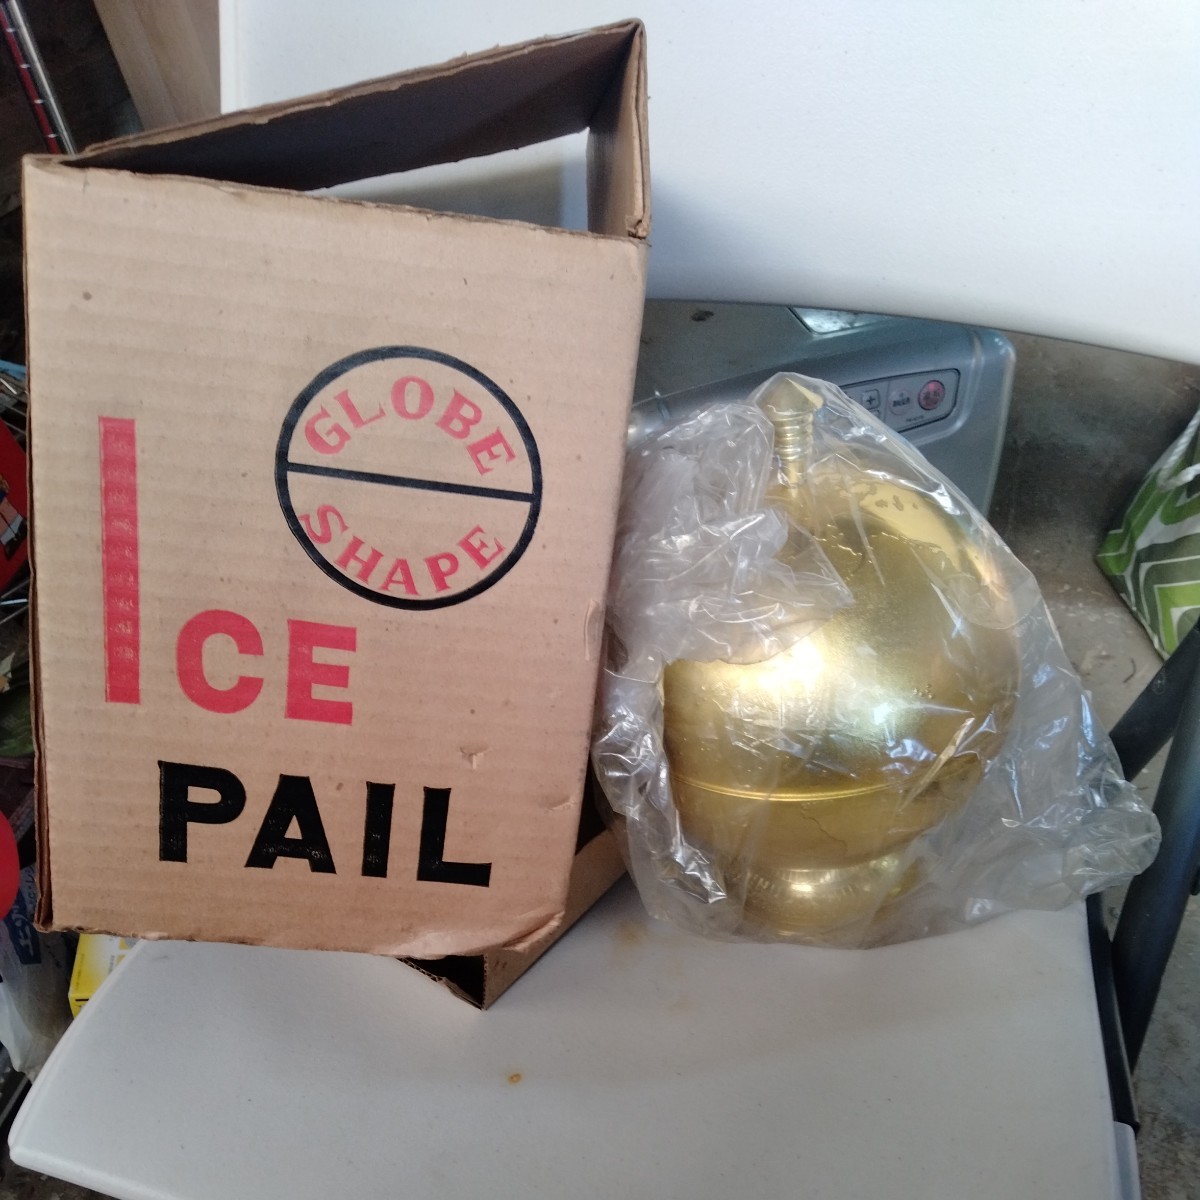  ведерко для льда лёд ICE PAIL GLOBE SHAPE античный retro глобус способ Gold цвет не использовался пластик 